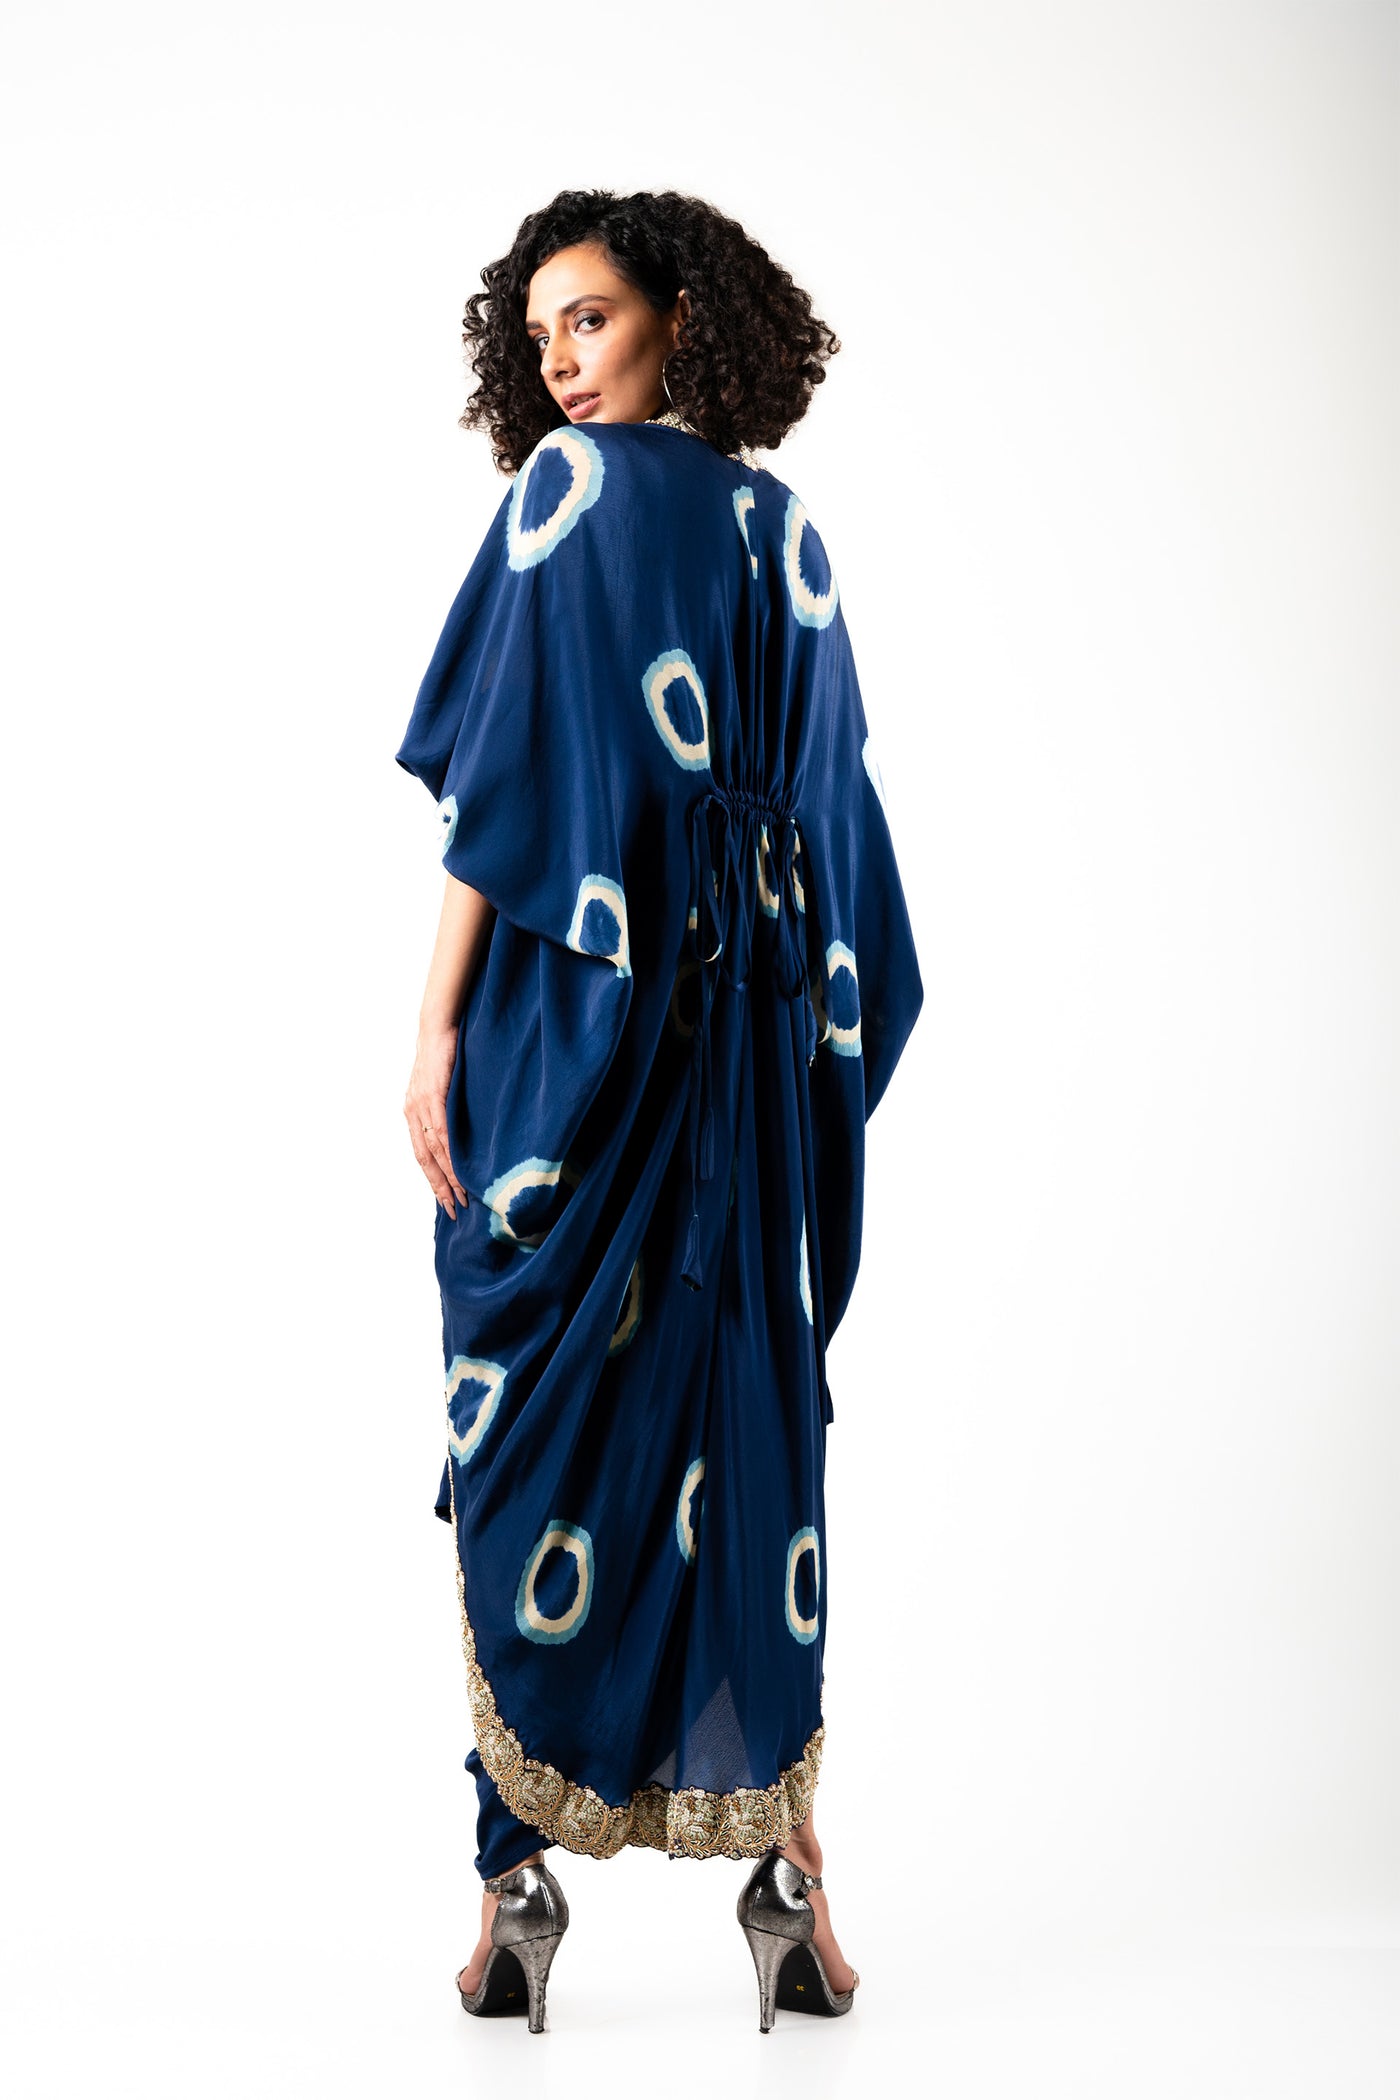 Nupur Kanoi Jacket With Dress Set blue off white festive fusion indian designer wear online shopping melange singapore